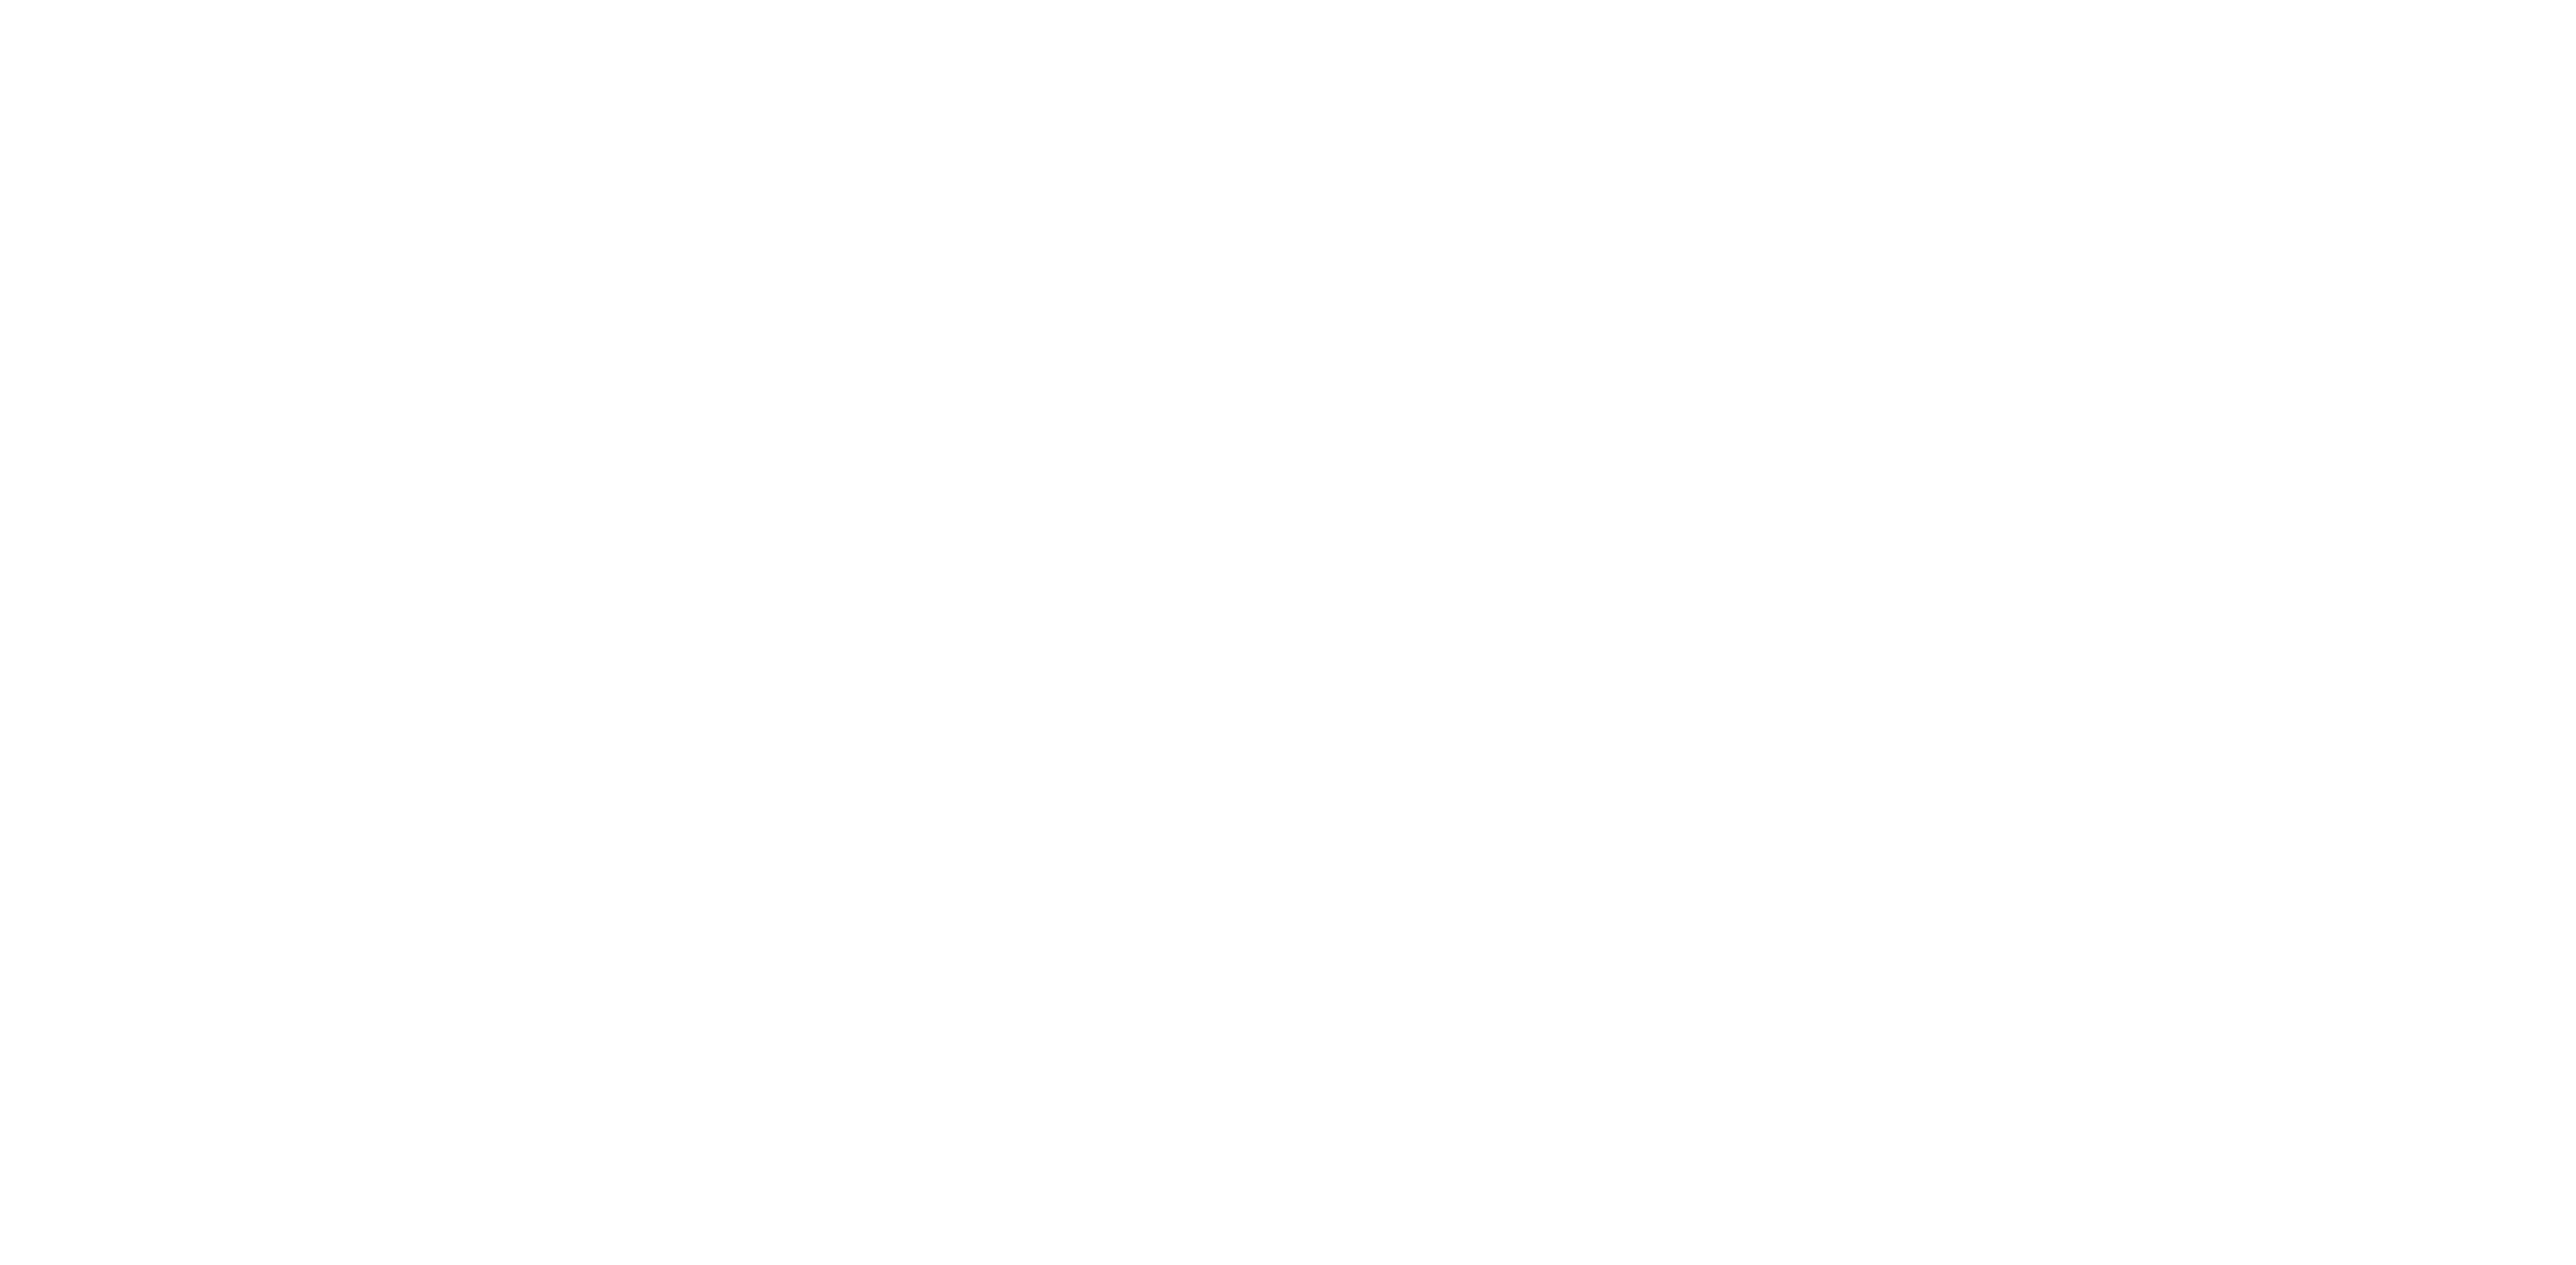 Global Tracking